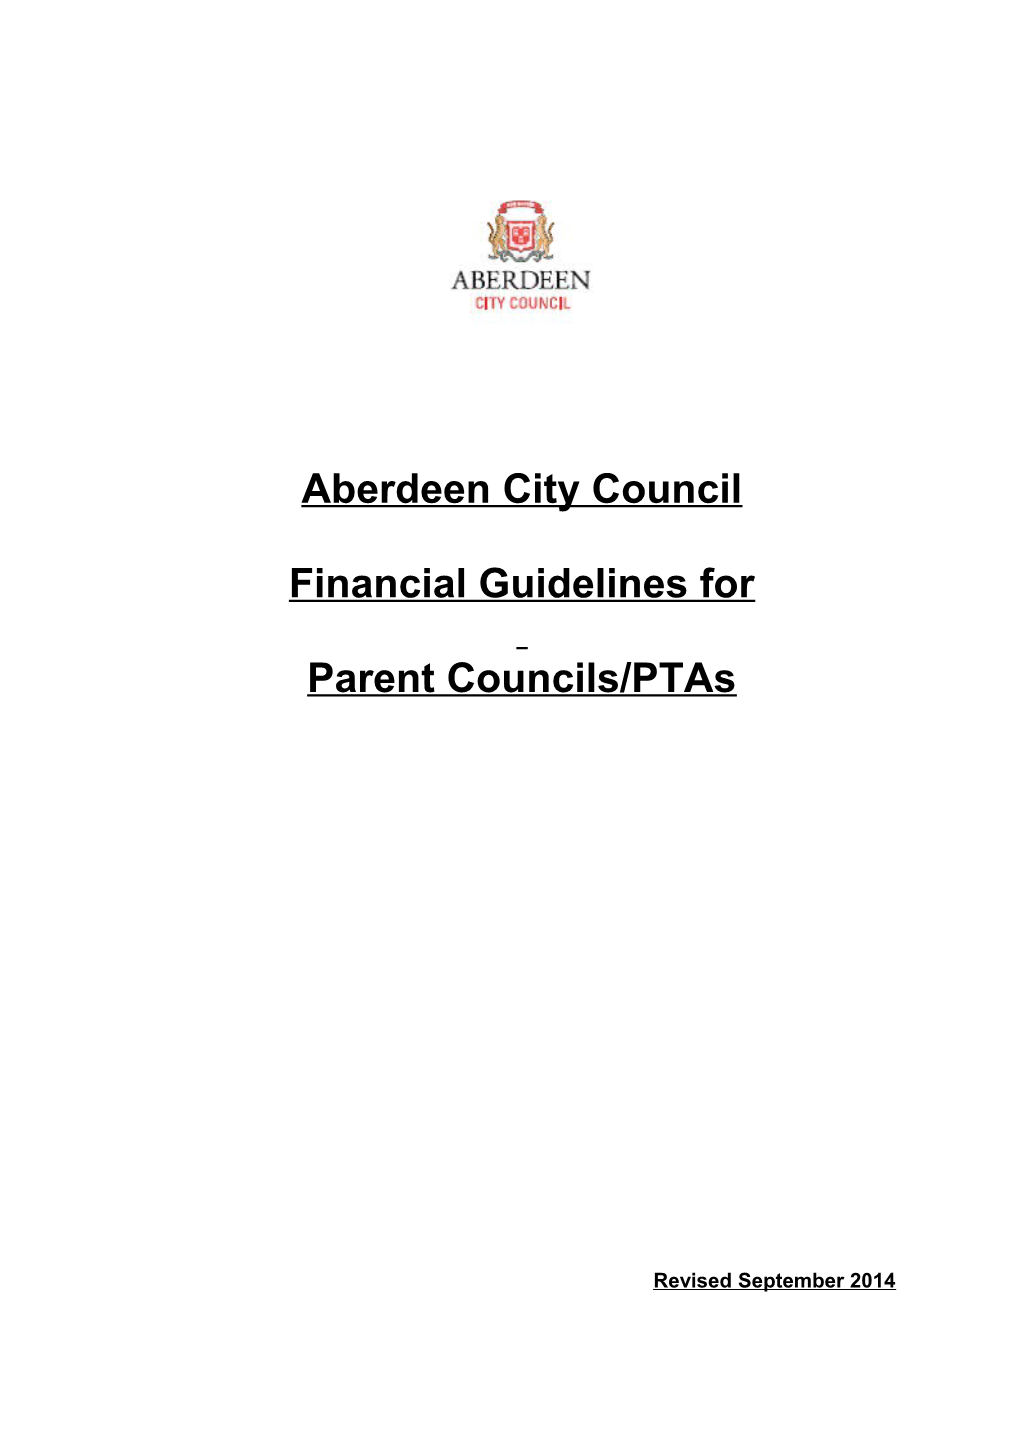 Financial Processes for Parent Councils